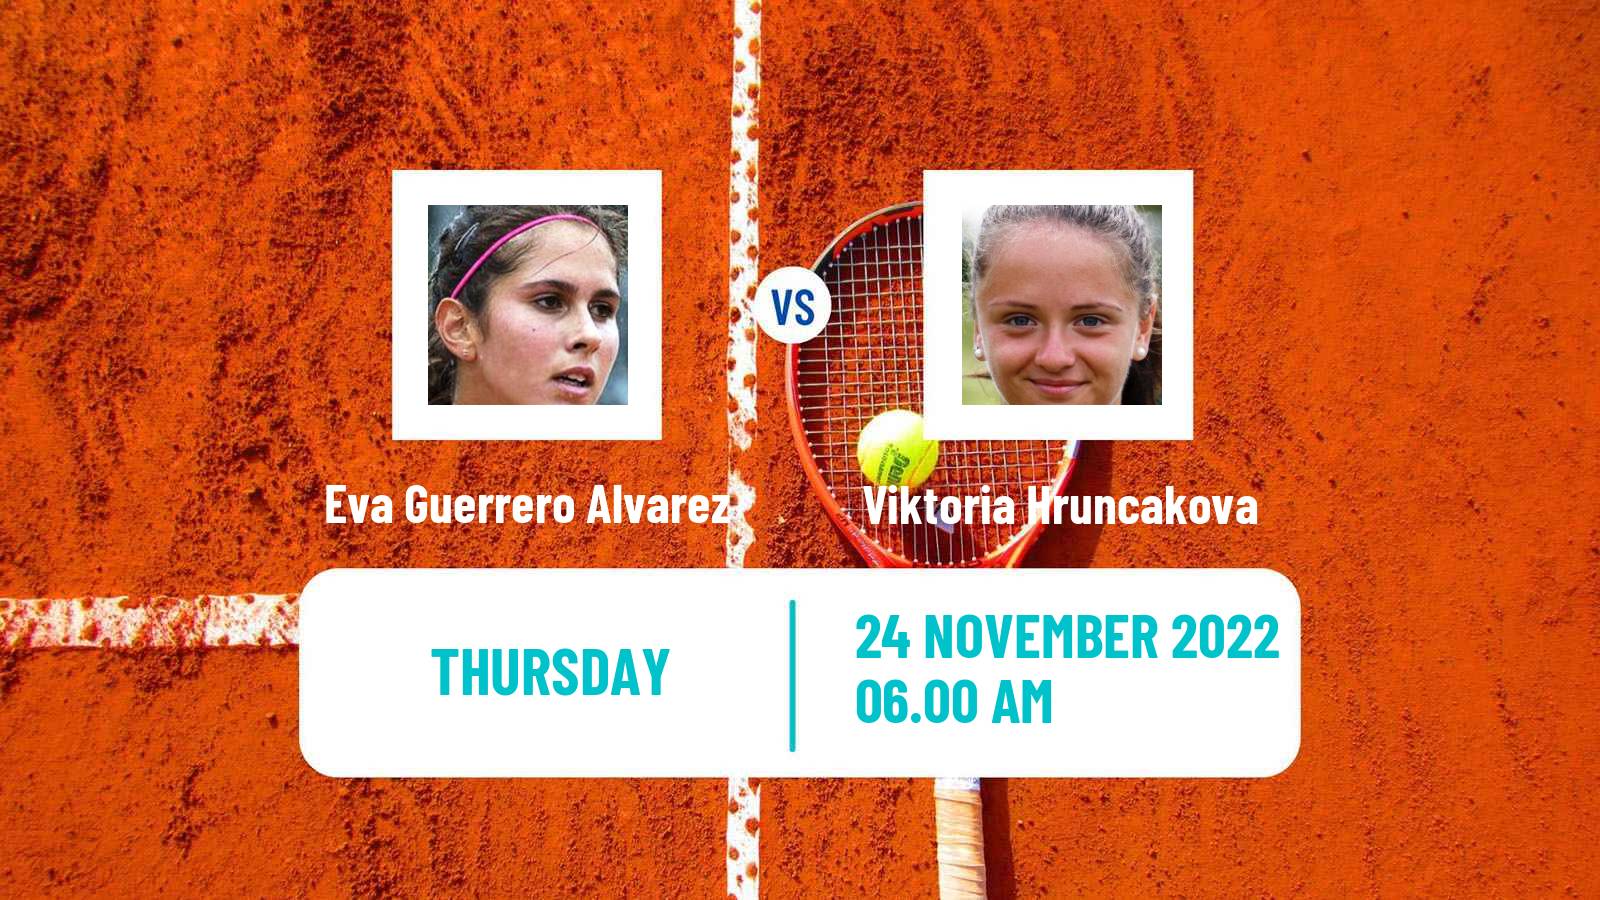 Tennis ITF Tournaments Eva Guerrero Alvarez - Viktoria Hruncakova